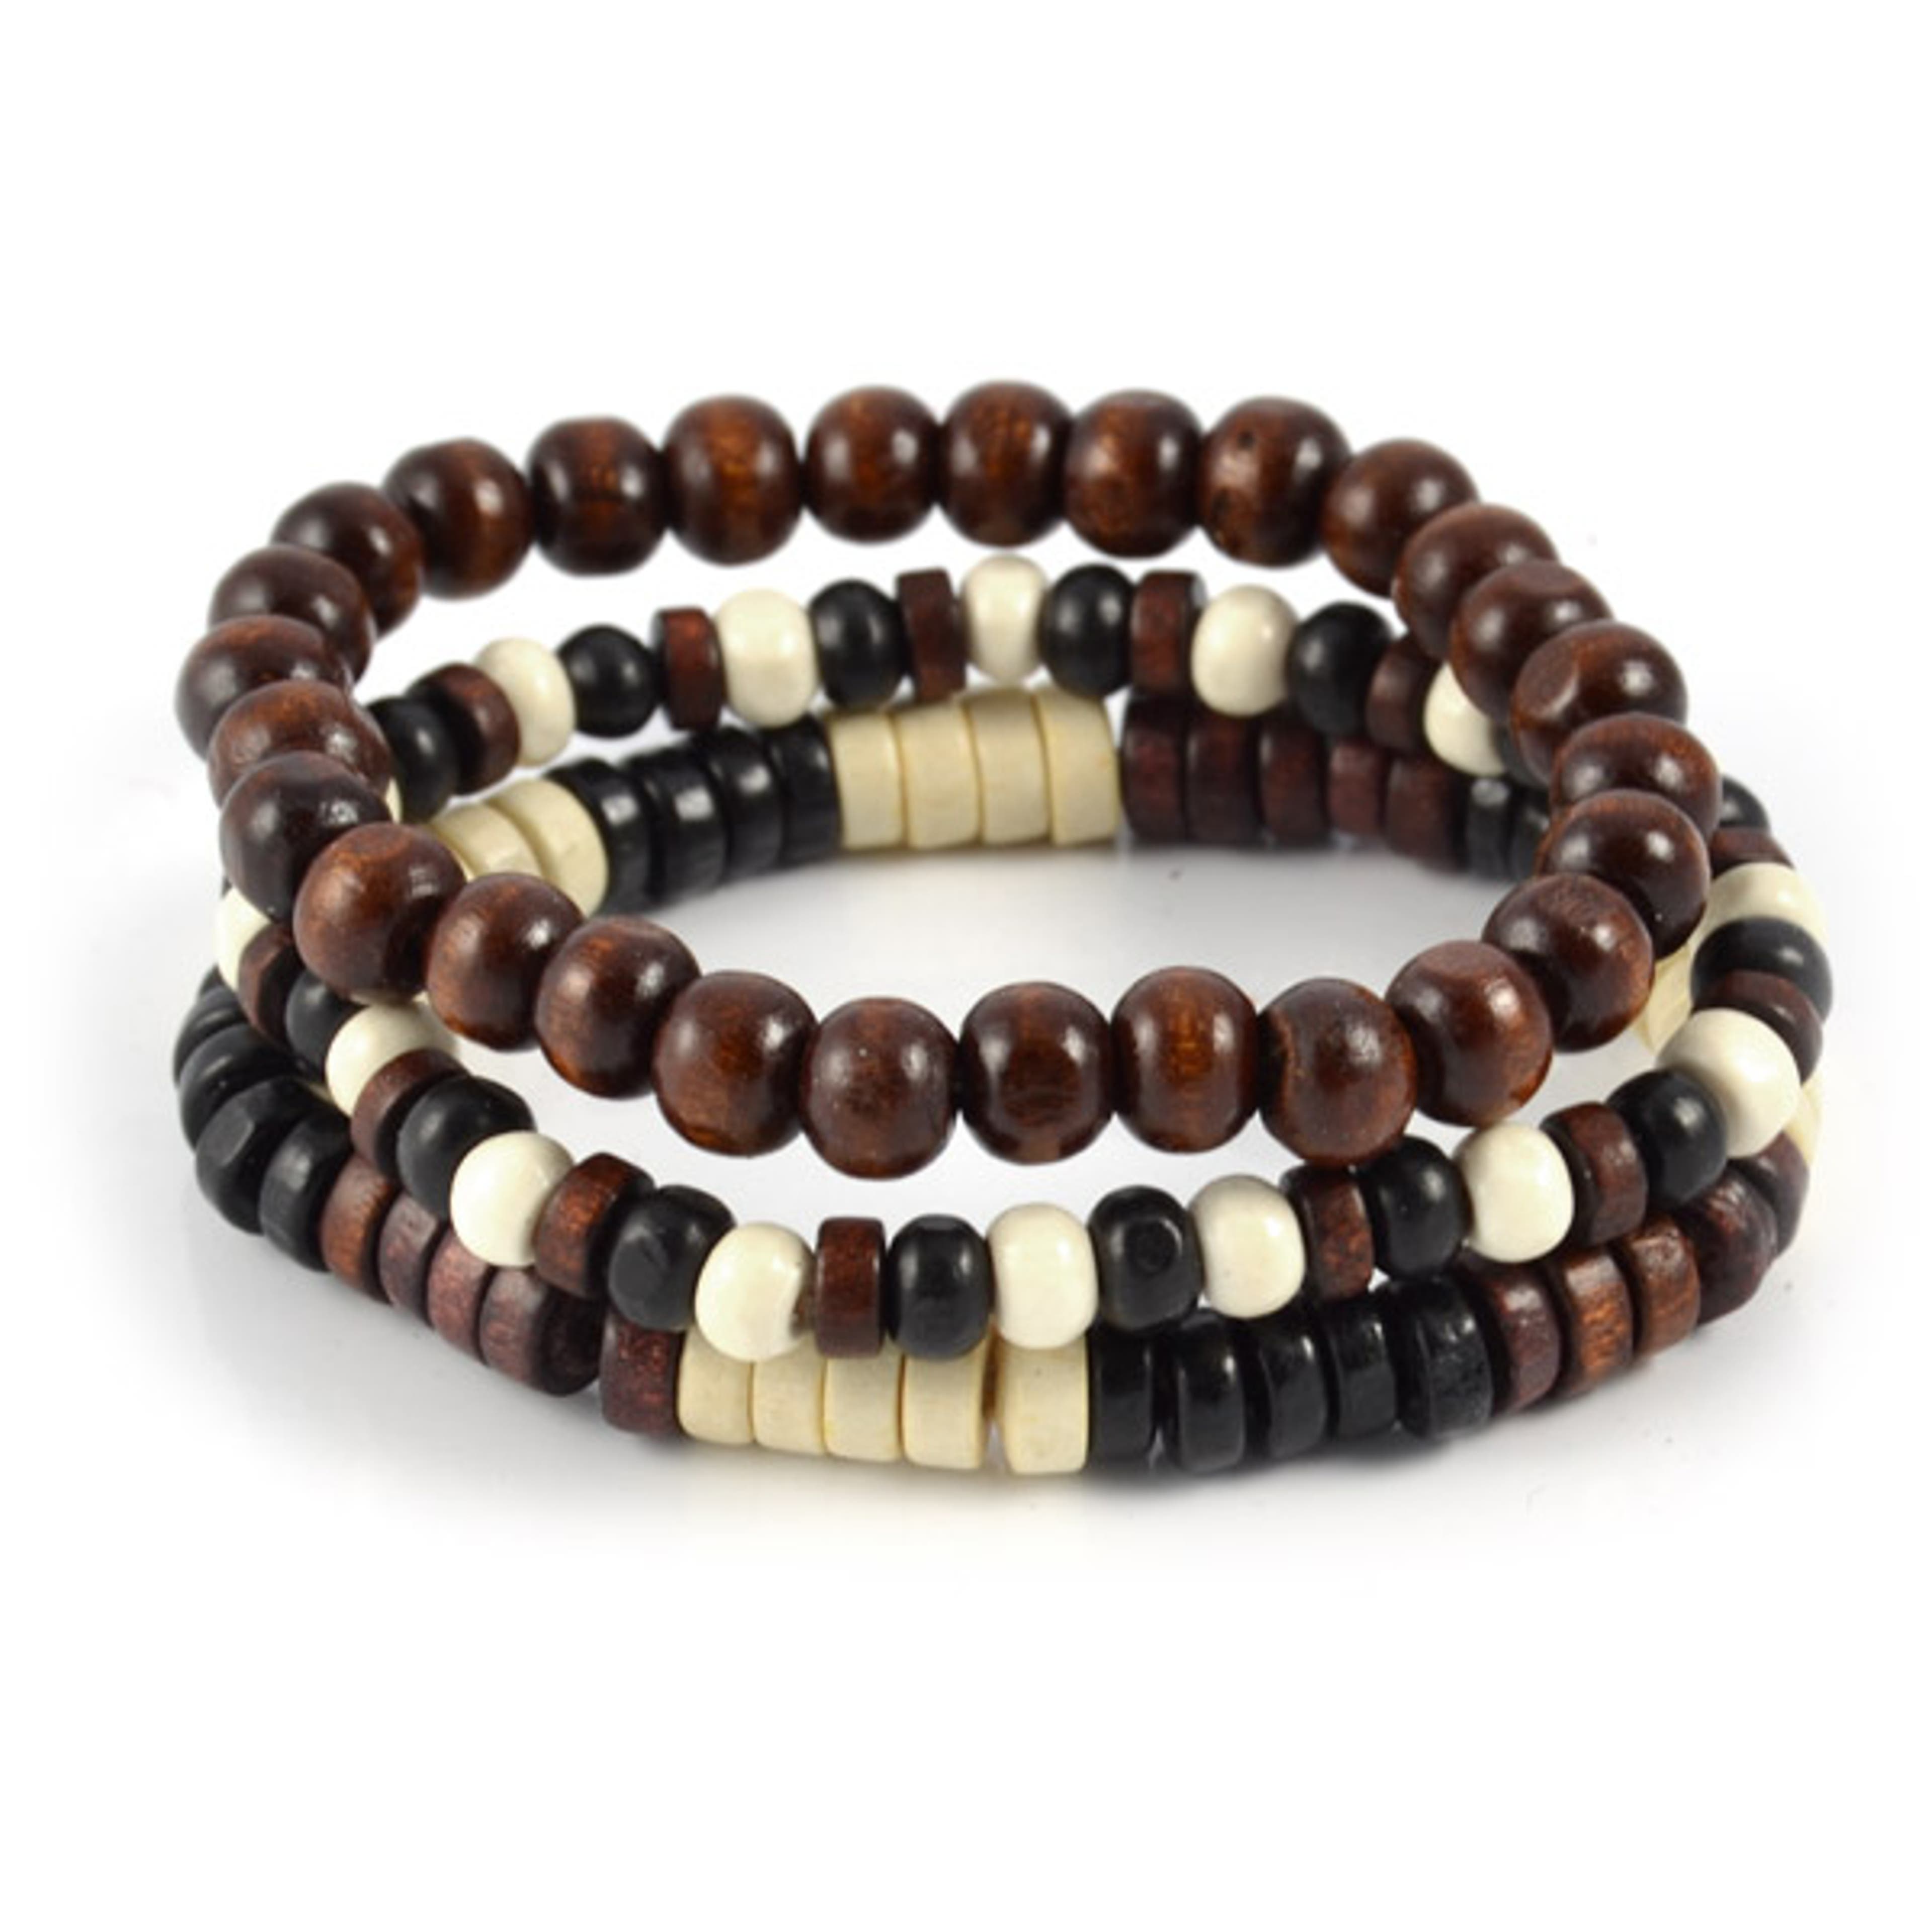 Brown, Beige & Black Wood Bead Bracelet